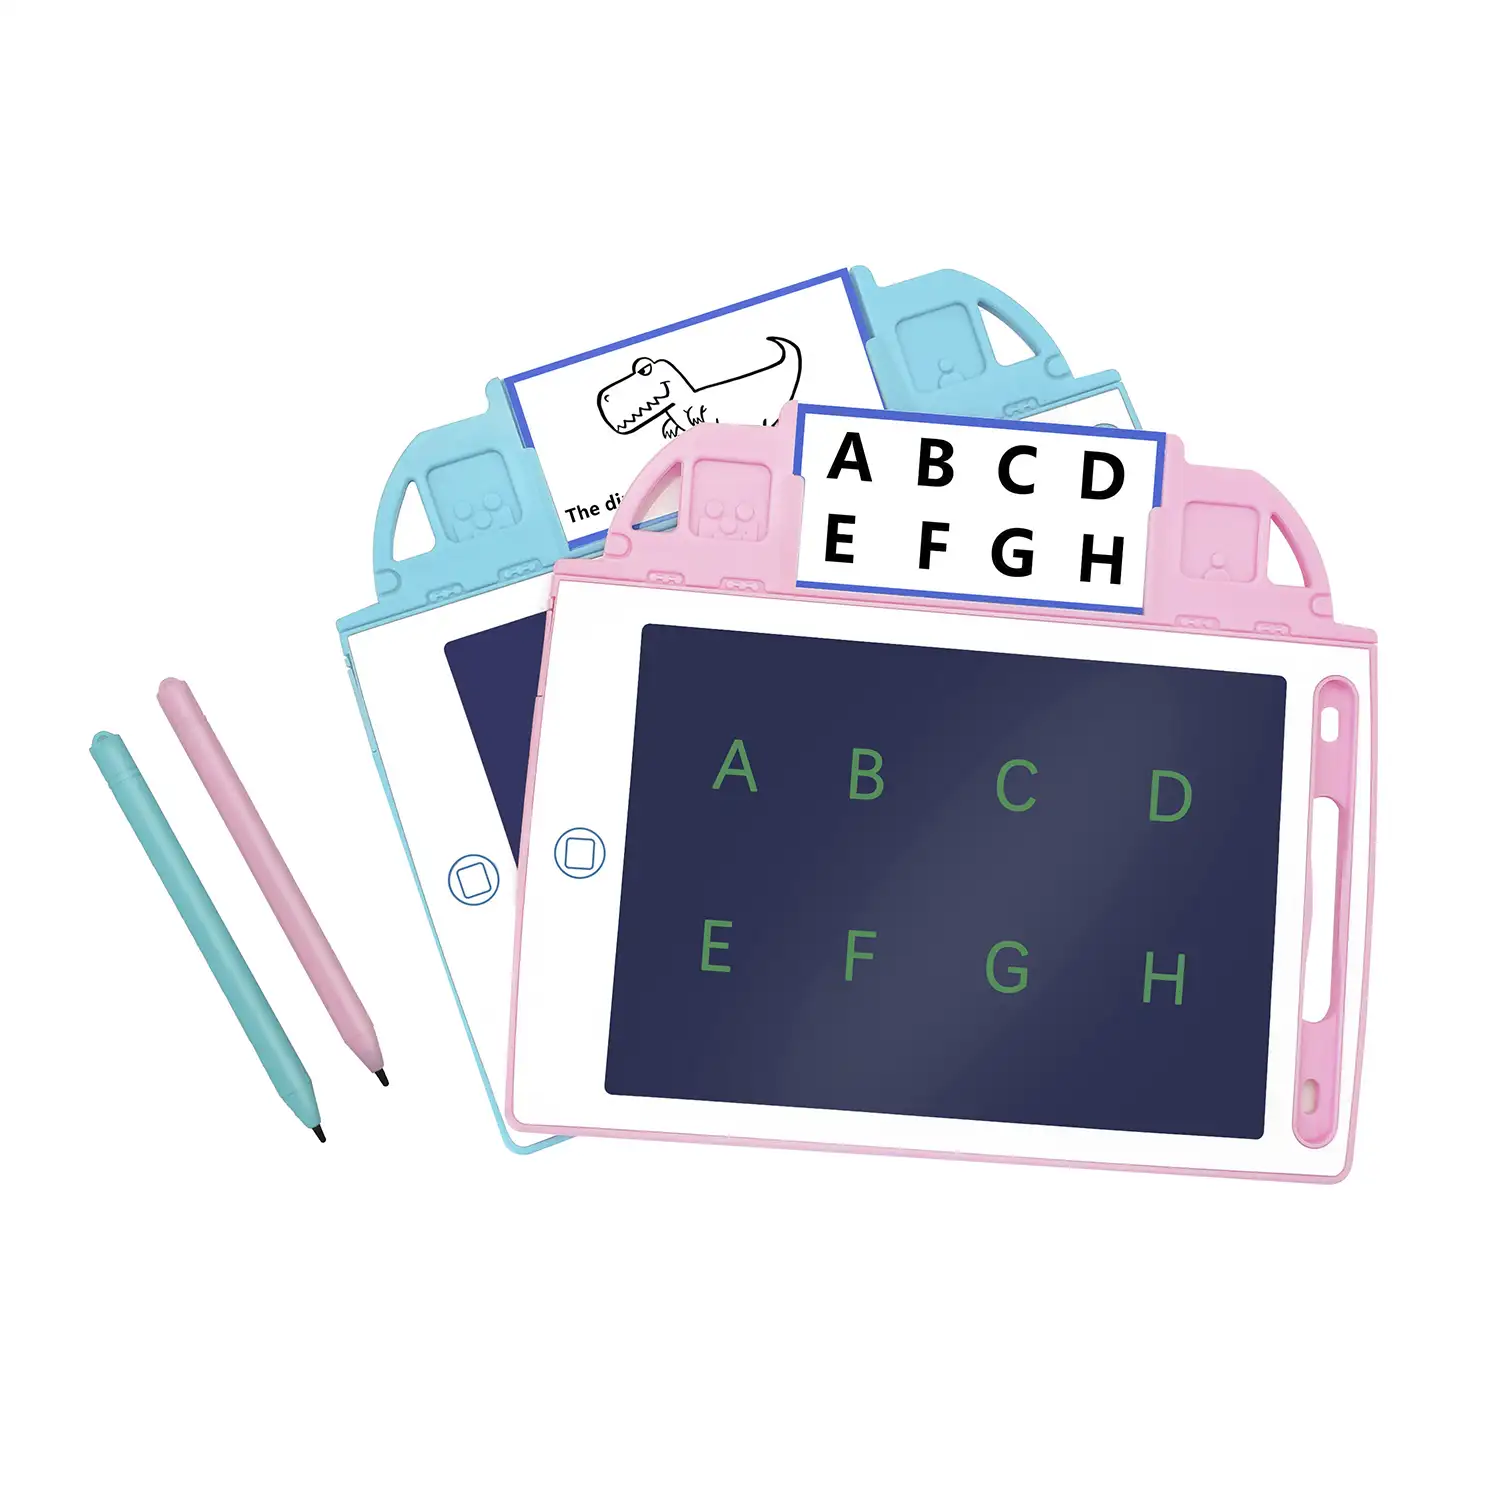 Tableta de dibujo y escritura LCD de 8,4 pulgadas. Portátil, con bloqueo de borrado. Incluye tarjetas de aprendizaje para escribir y dibujar.